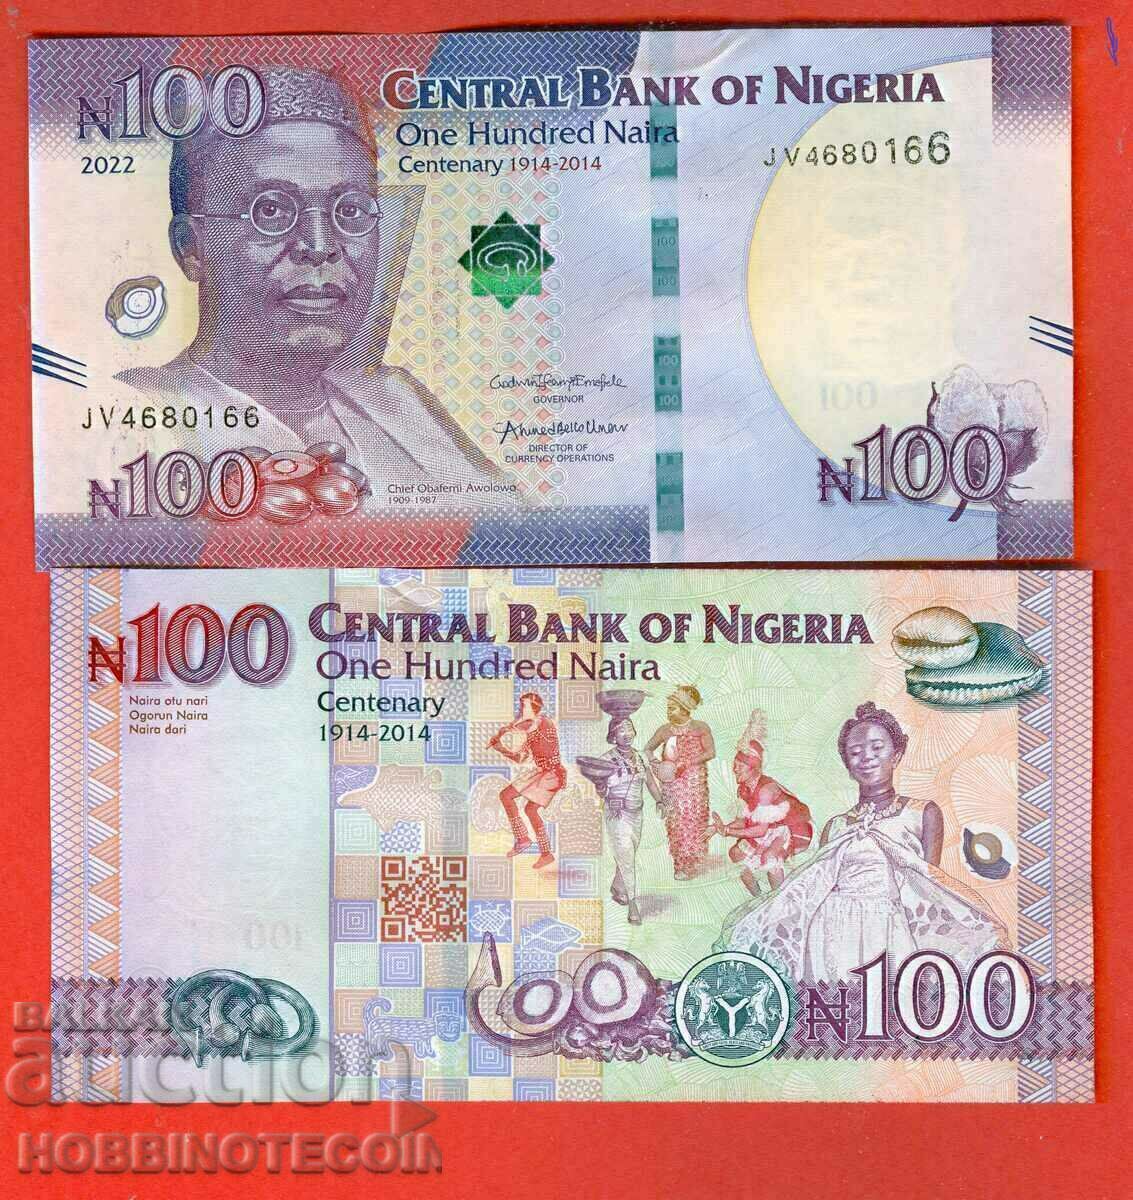 NIGERIA NIGERIA 100 NAIRA έκδοση - τεύχος 2022 NEW UNC